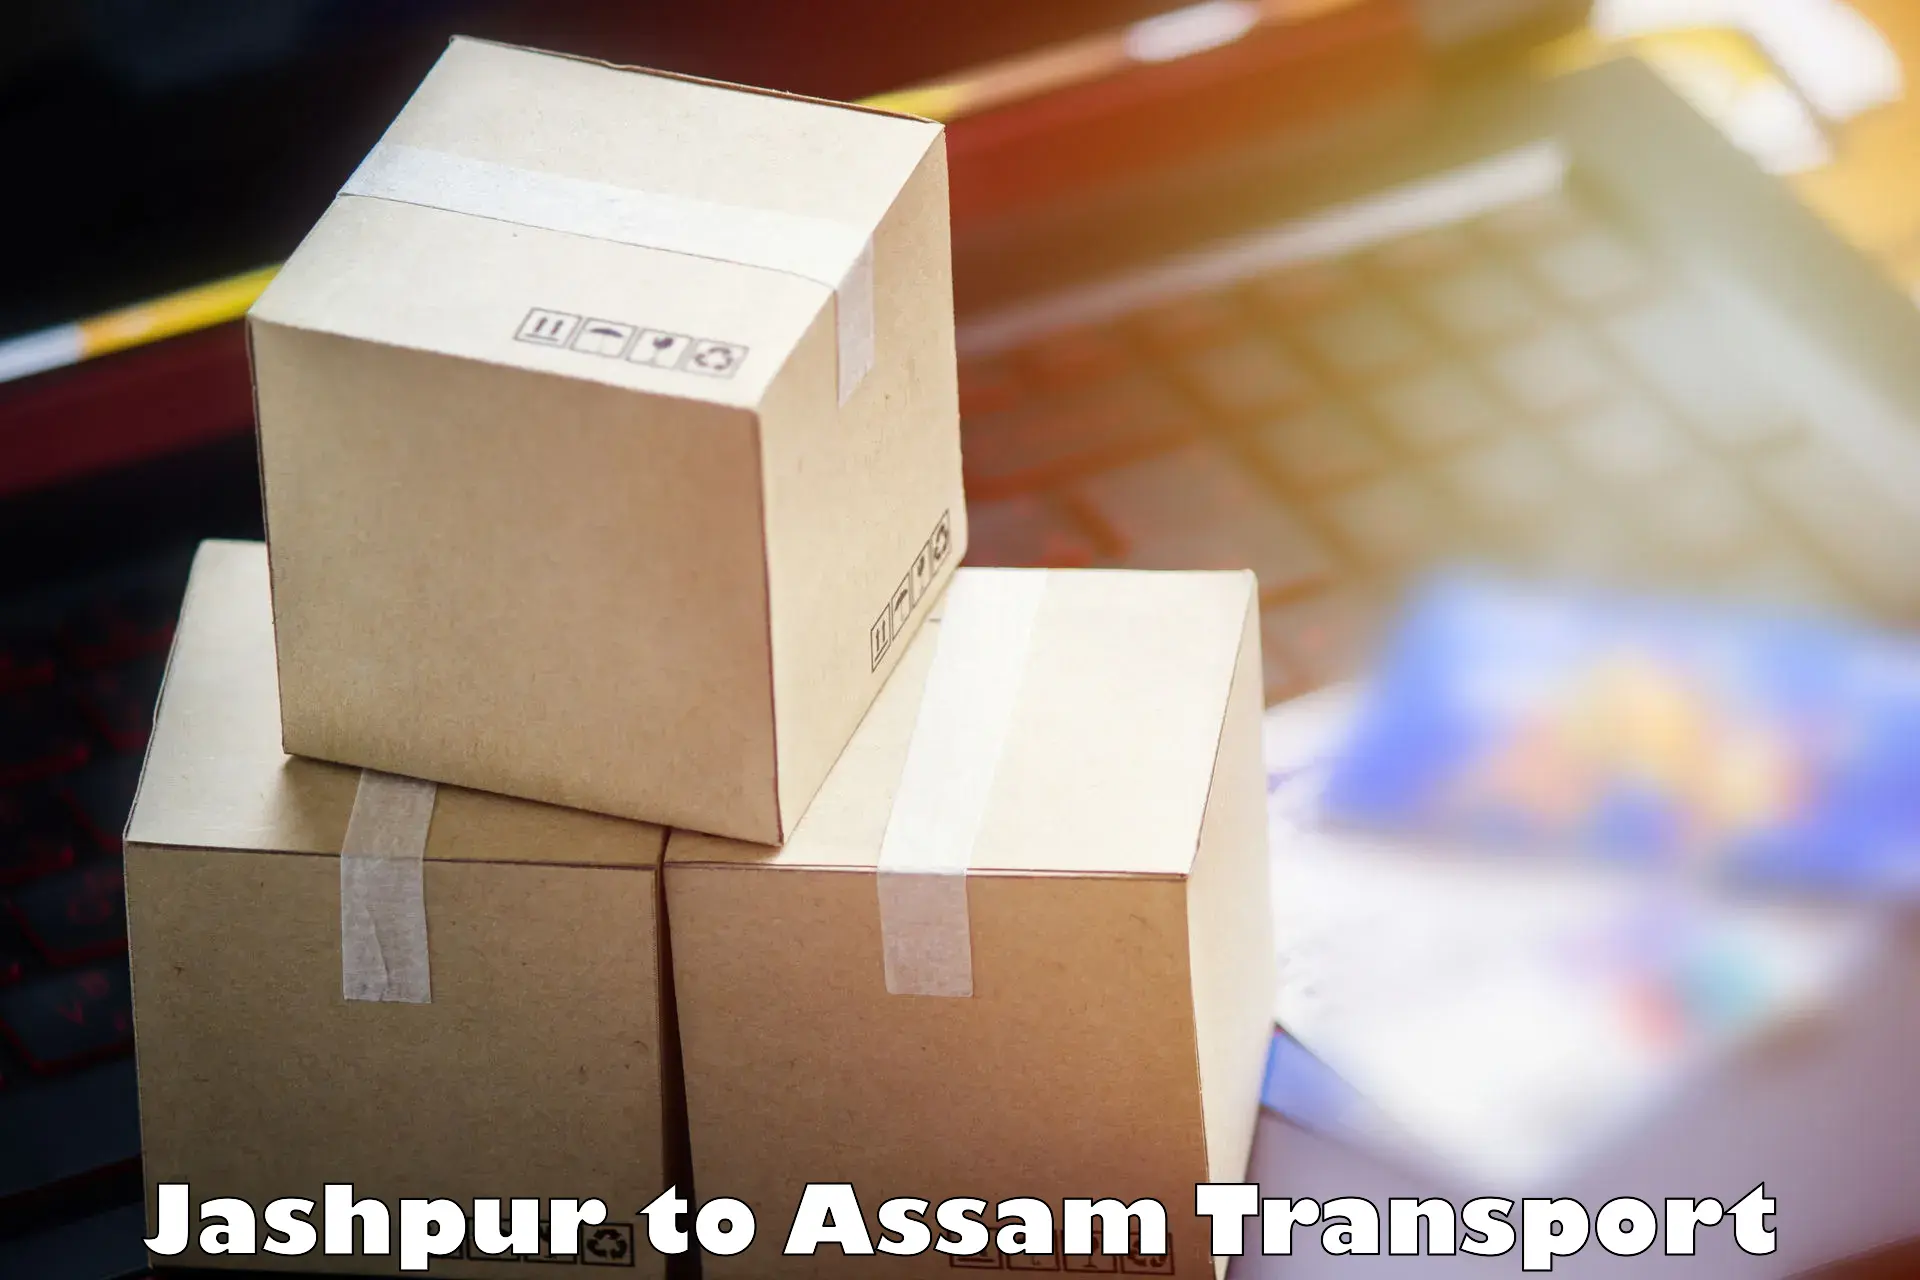 International cargo transportation services Jashpur to Badarpur Karimganj